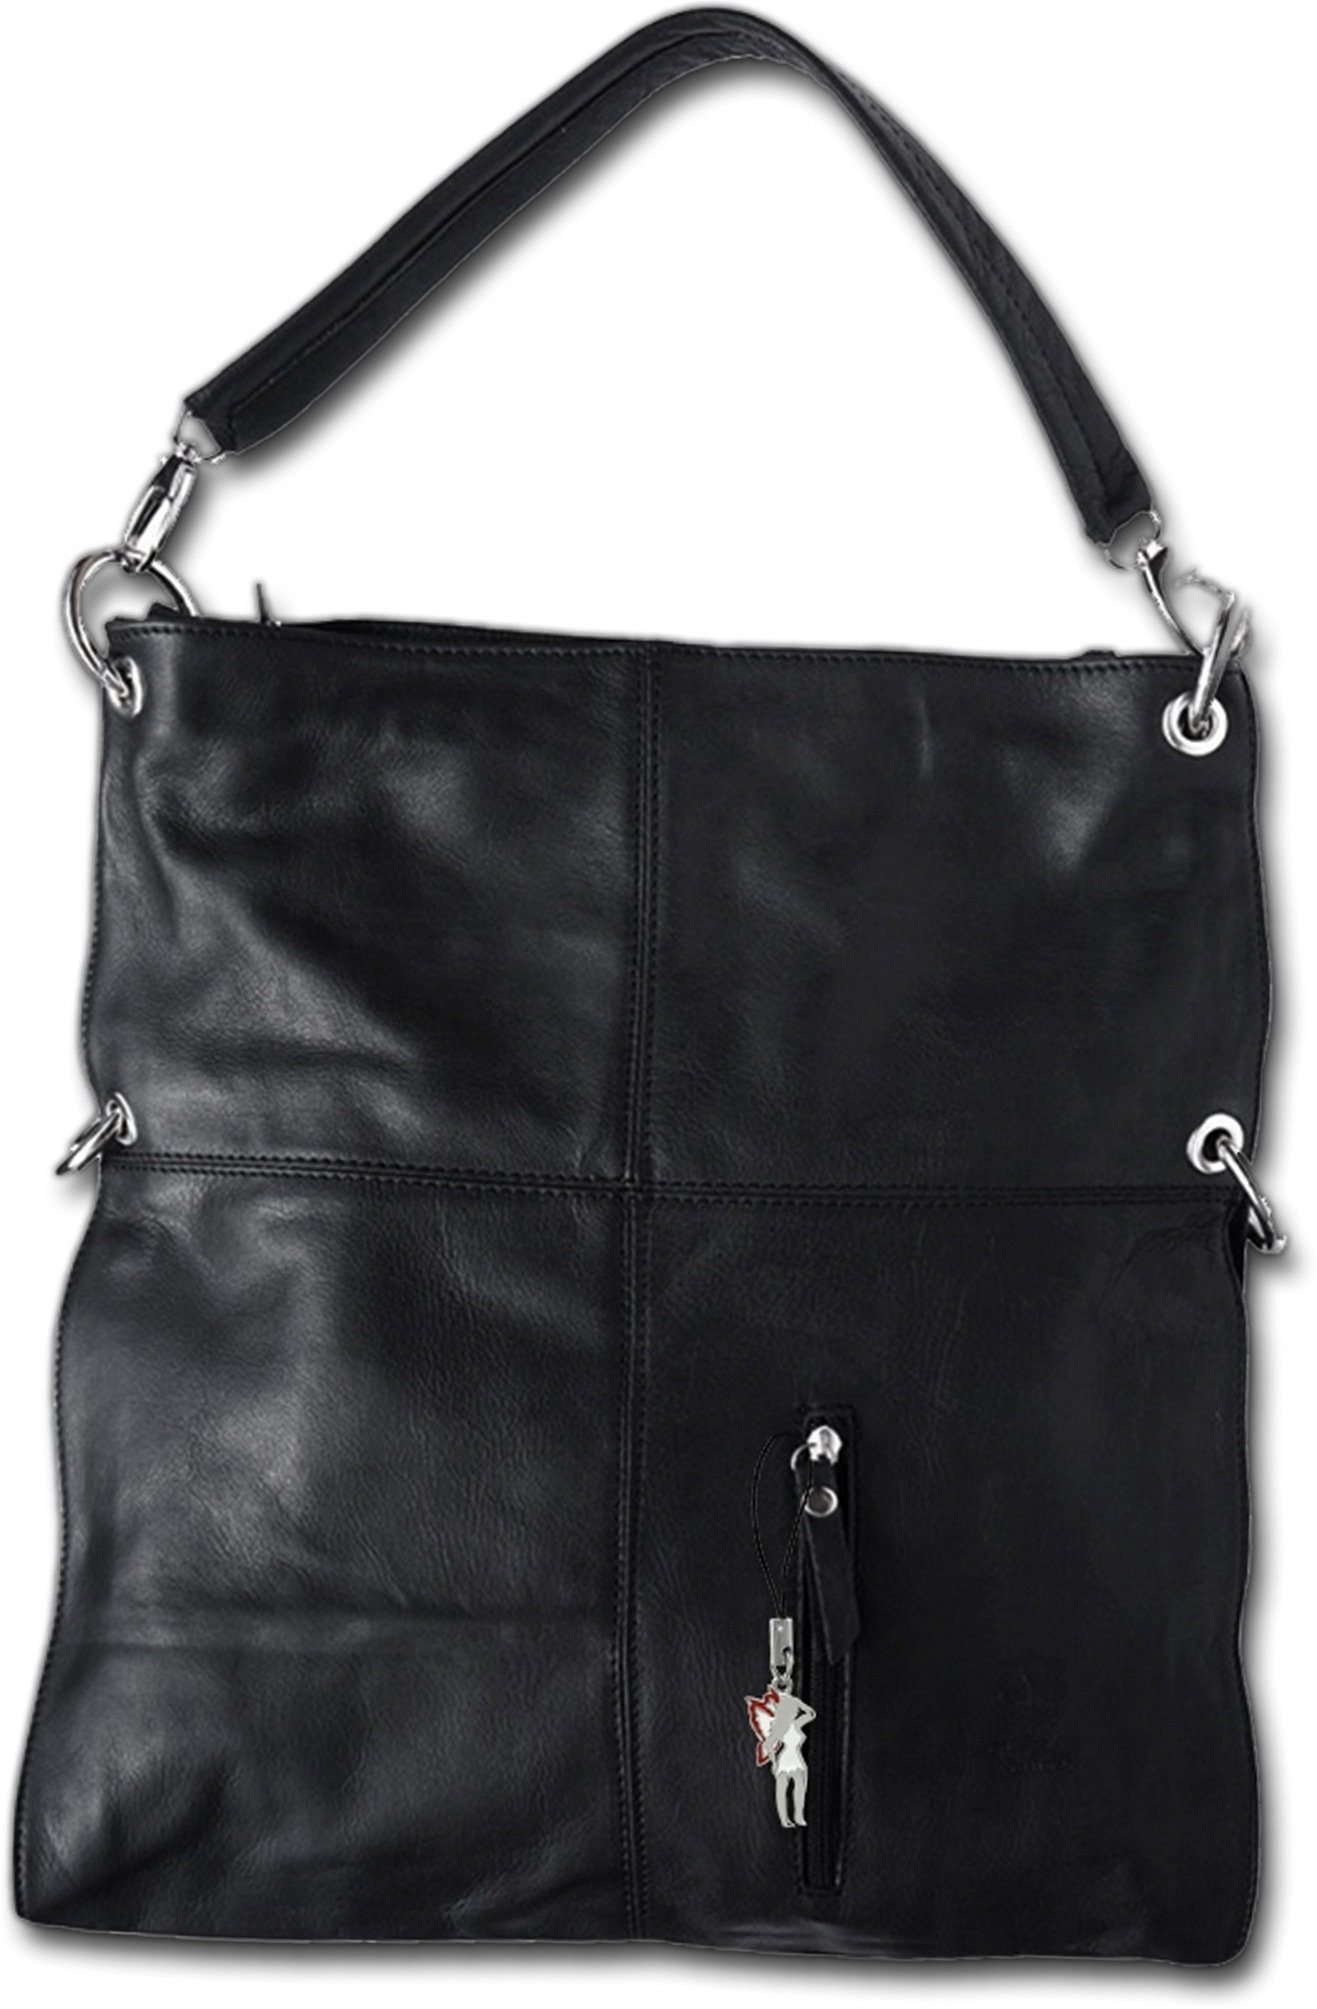 FLORENCE Schultertasche D2OTF102X Florence Hobo Bag Echtleder Damentasche (Beuteltasche, Beuteltasche), Damen Tasche Echtleder schwarz, Made-In Italy